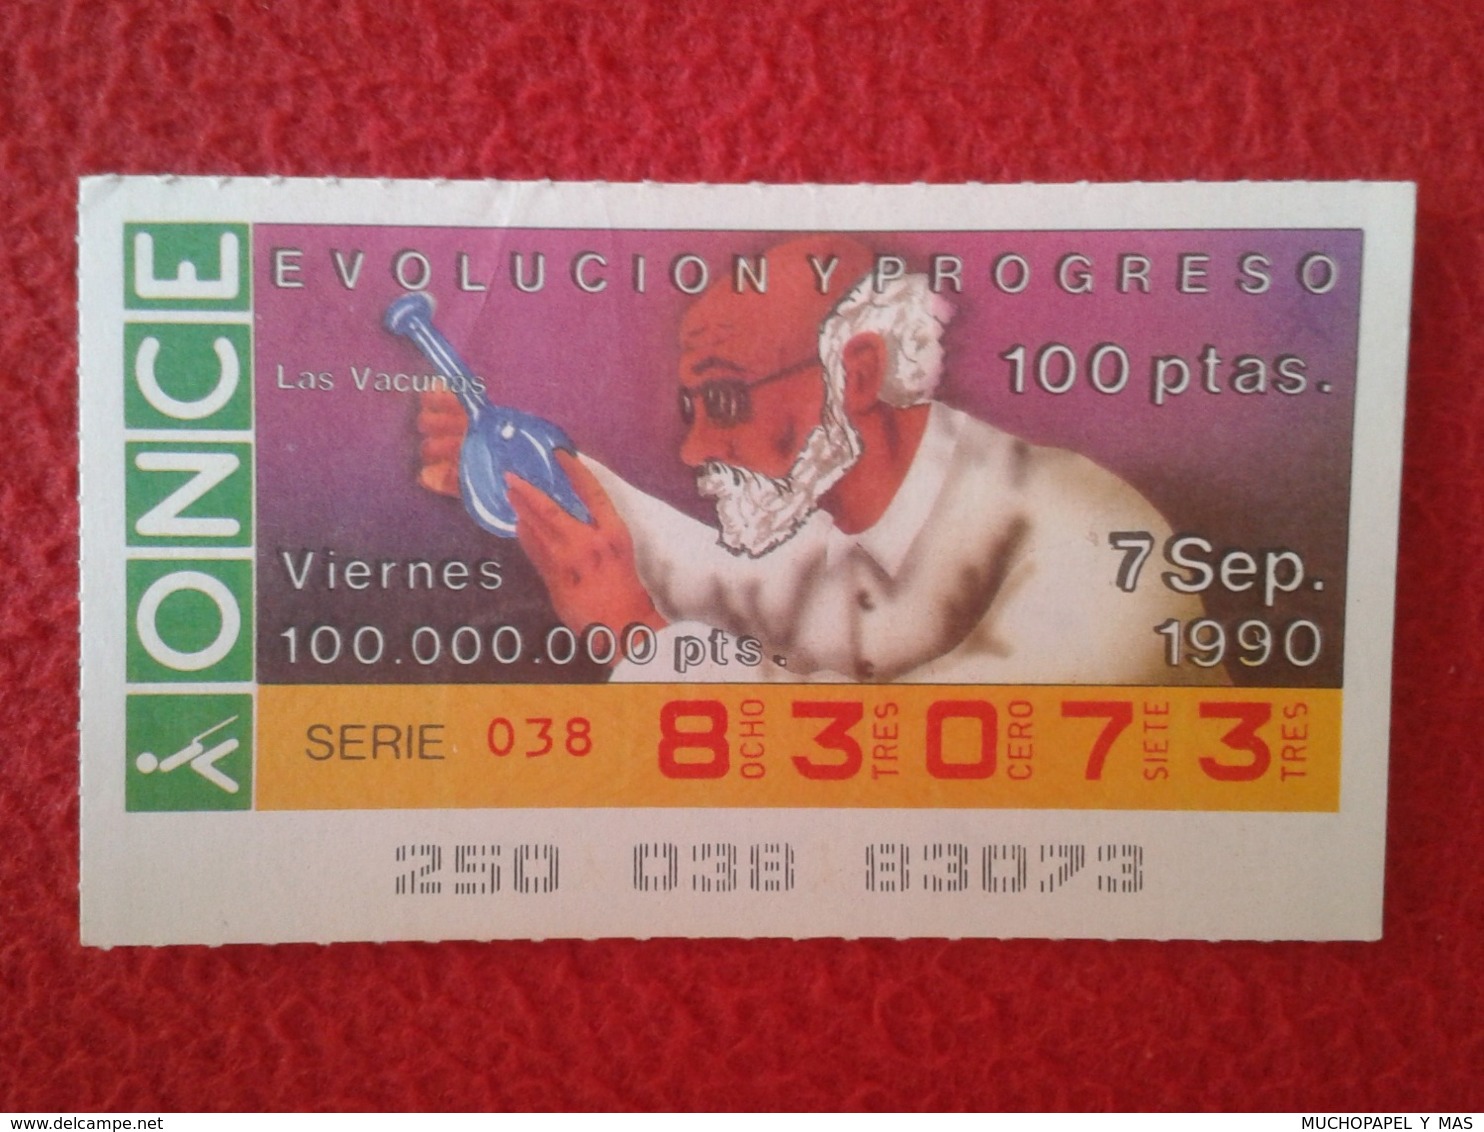 SPAIN CUPÓN DE ONCE LOTTERY LOTERÍA ESPAÑA 1990 EVOLUCIÓN Y PROGRESO EVOLUTION AND PROGRESS LAS VACUNAS VACCINES VACCINE - Billetes De Lotería